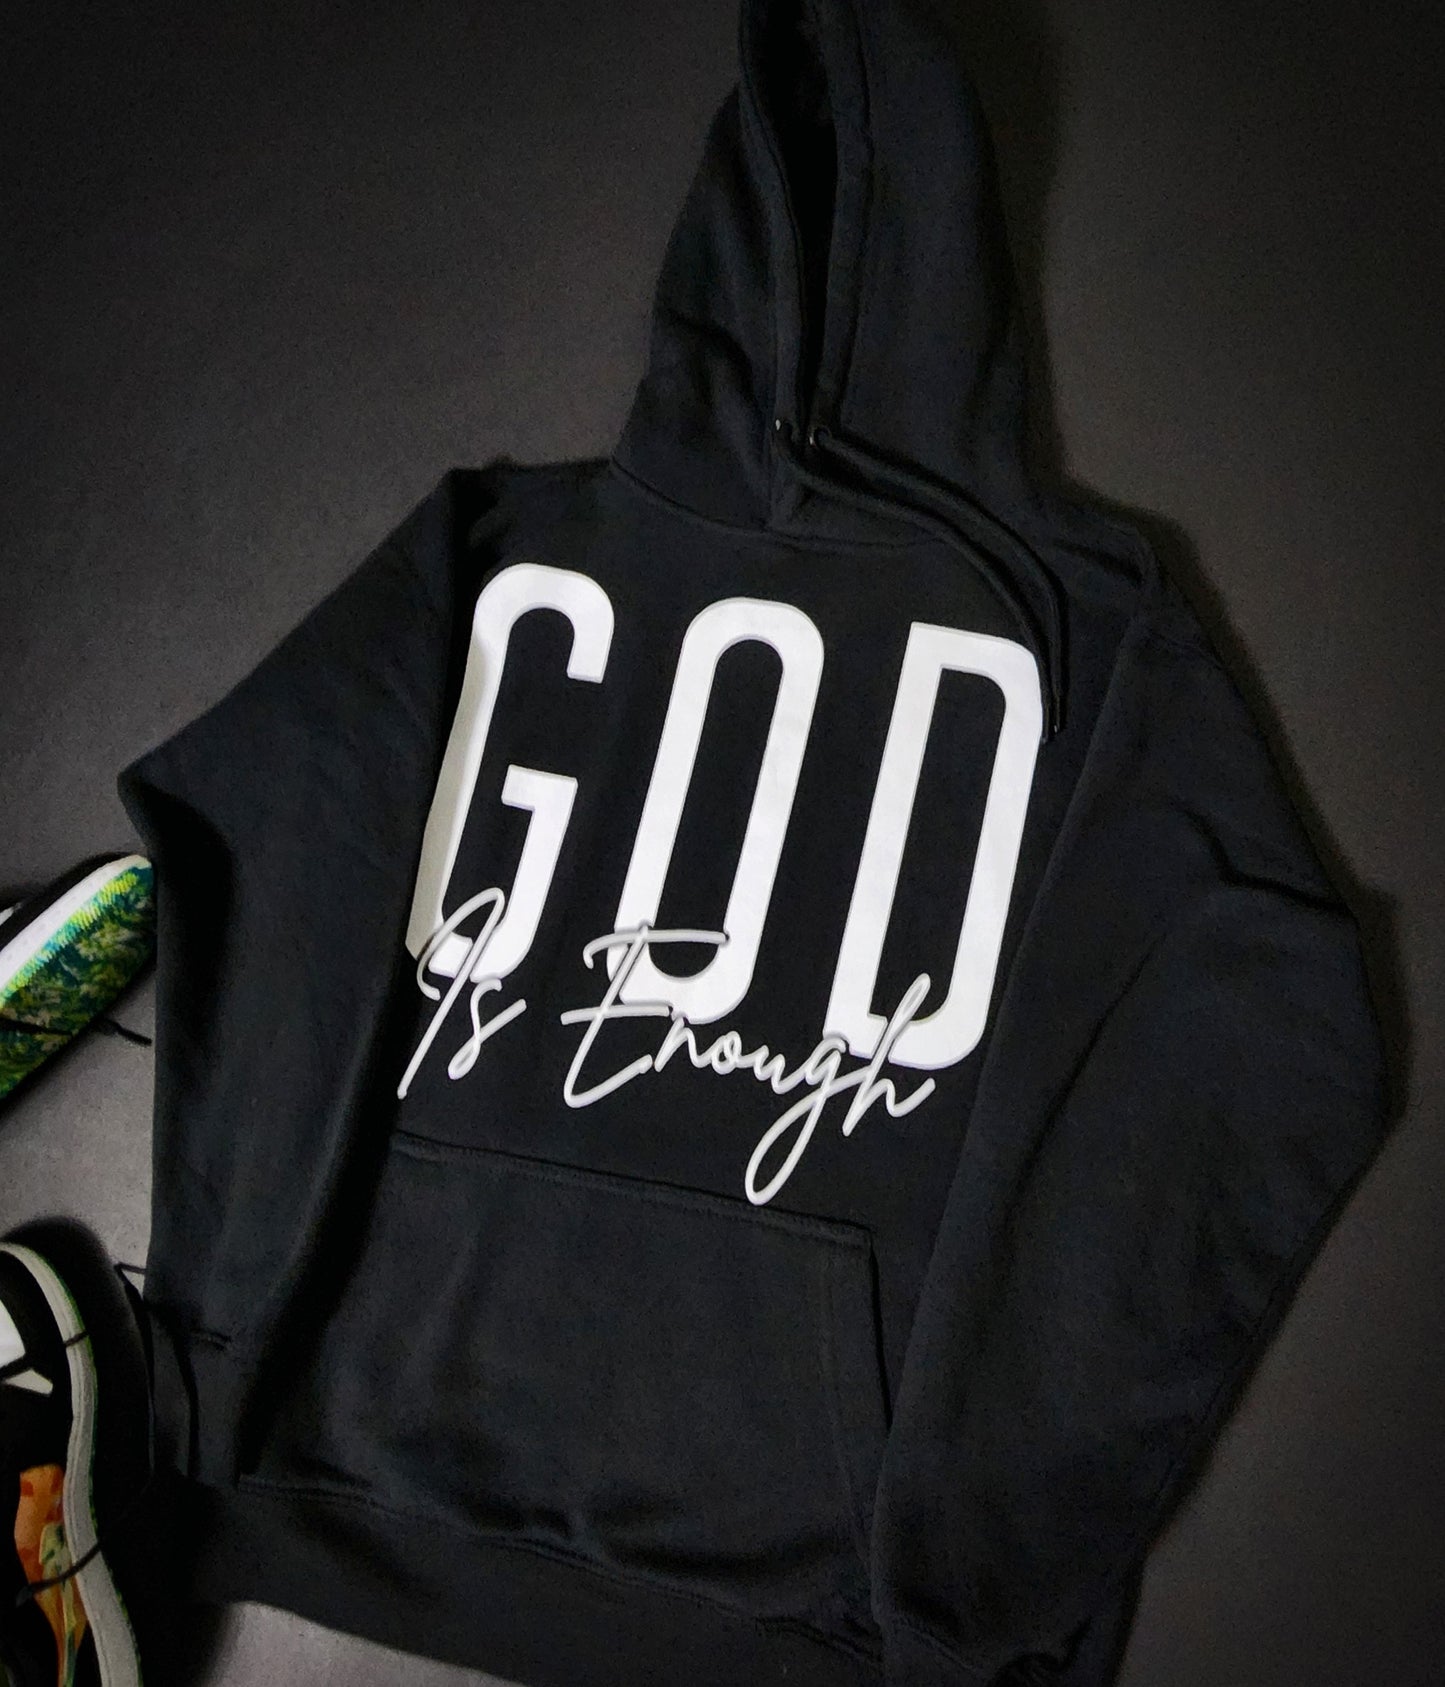 God Is Enough (Goodie Hoodies)